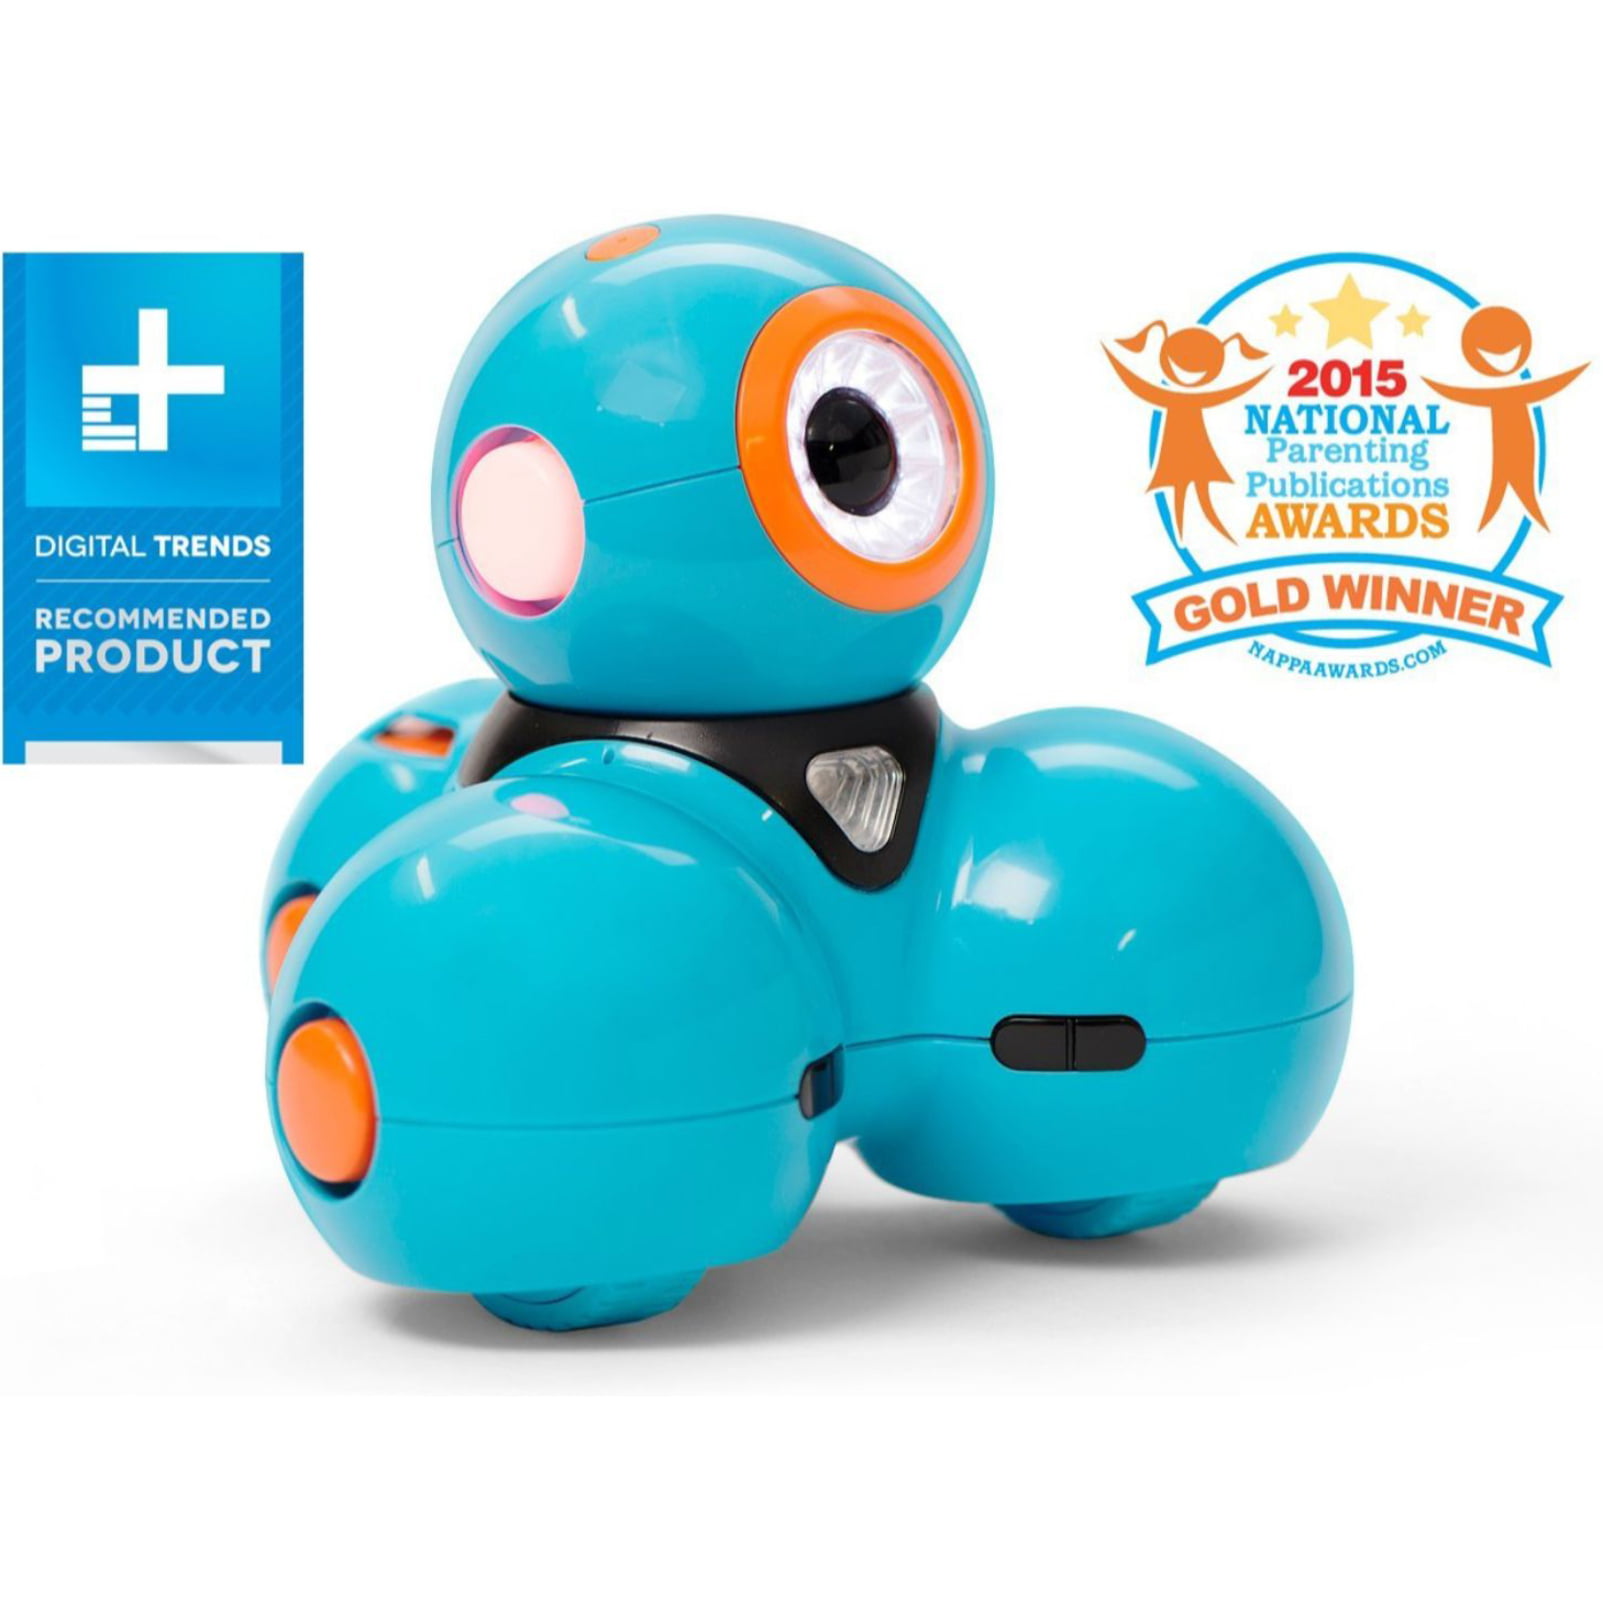 Dash Robot Rental – LurnBot